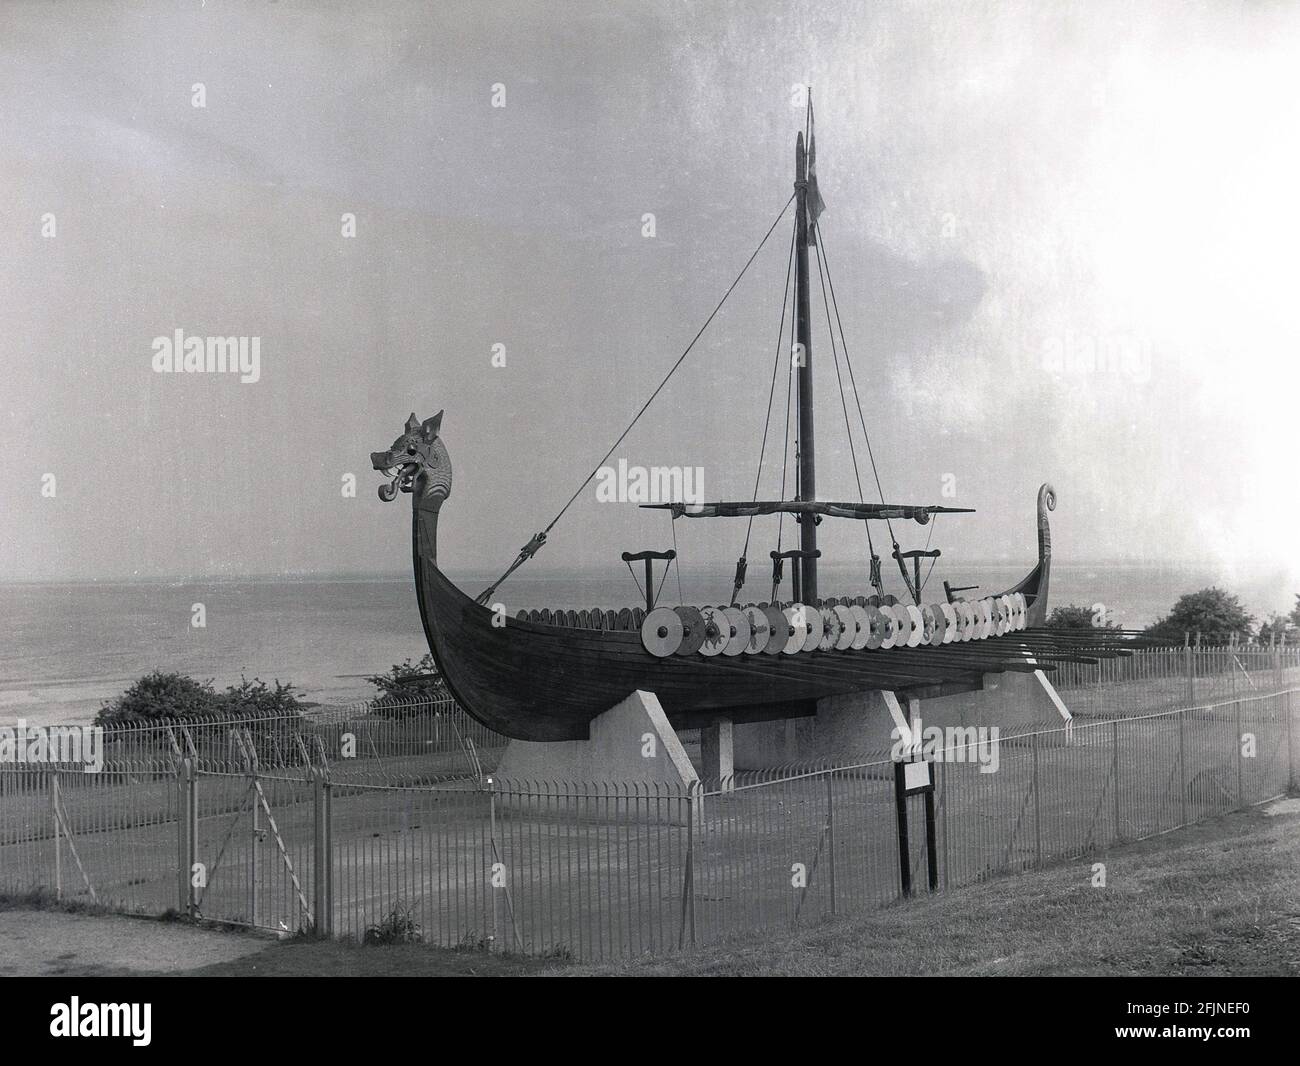 1958, das Wikingerschiff oder Langboot "Hugin", das an der Küste auf der Pegwell Bay Klippe, Ramsgate, Kent, England, Großbritannien, ausgestellt wird. Ein rekonstruiertes Langschiff, die Hugin, ein Geschenk des dänischen Schenkers zum Gedenken an den 1500. Jahrestag von Hengist und Horsa, Anführer der angelsächsischen Invasion in der nahegelegenen Ebbsfleet, kam 1949 in Viking Bay, Broadstairs an. Es ist eine Nachbildung des Gokstad-Schiffes, ca. 890. Stockfoto